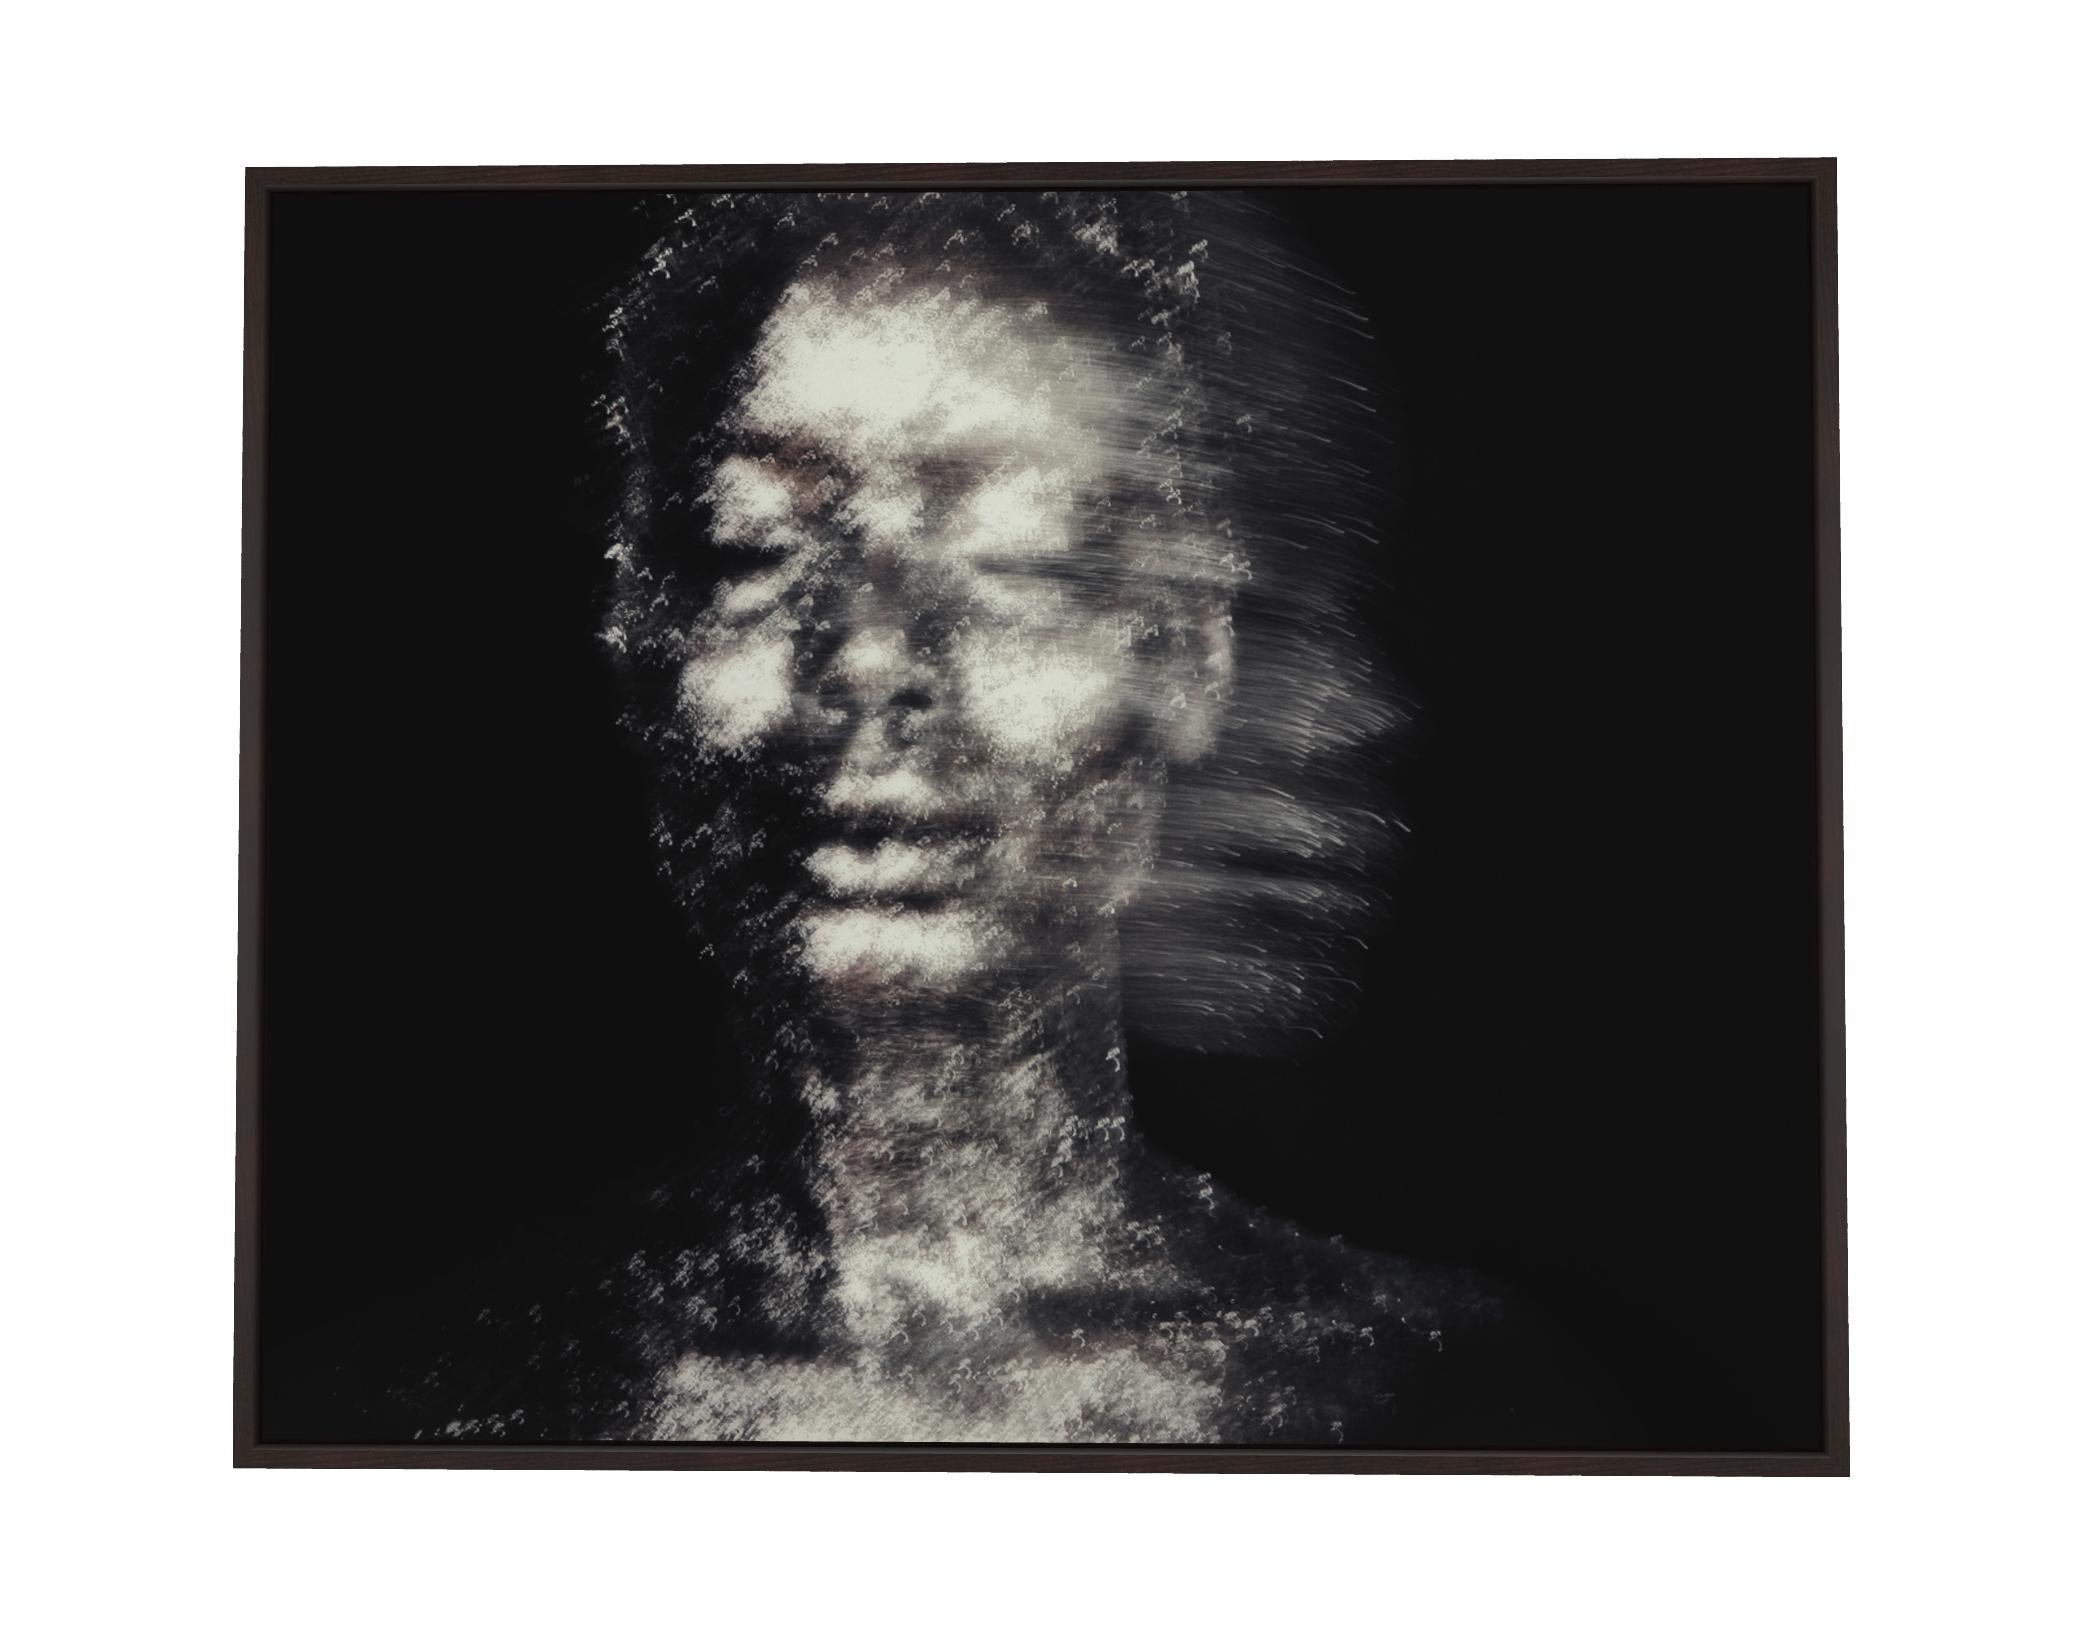 We Are Ghosts – Abstrakte expressionistische Kunstfotografie (Schwarz), Black and White Photograph, von Roger Reist